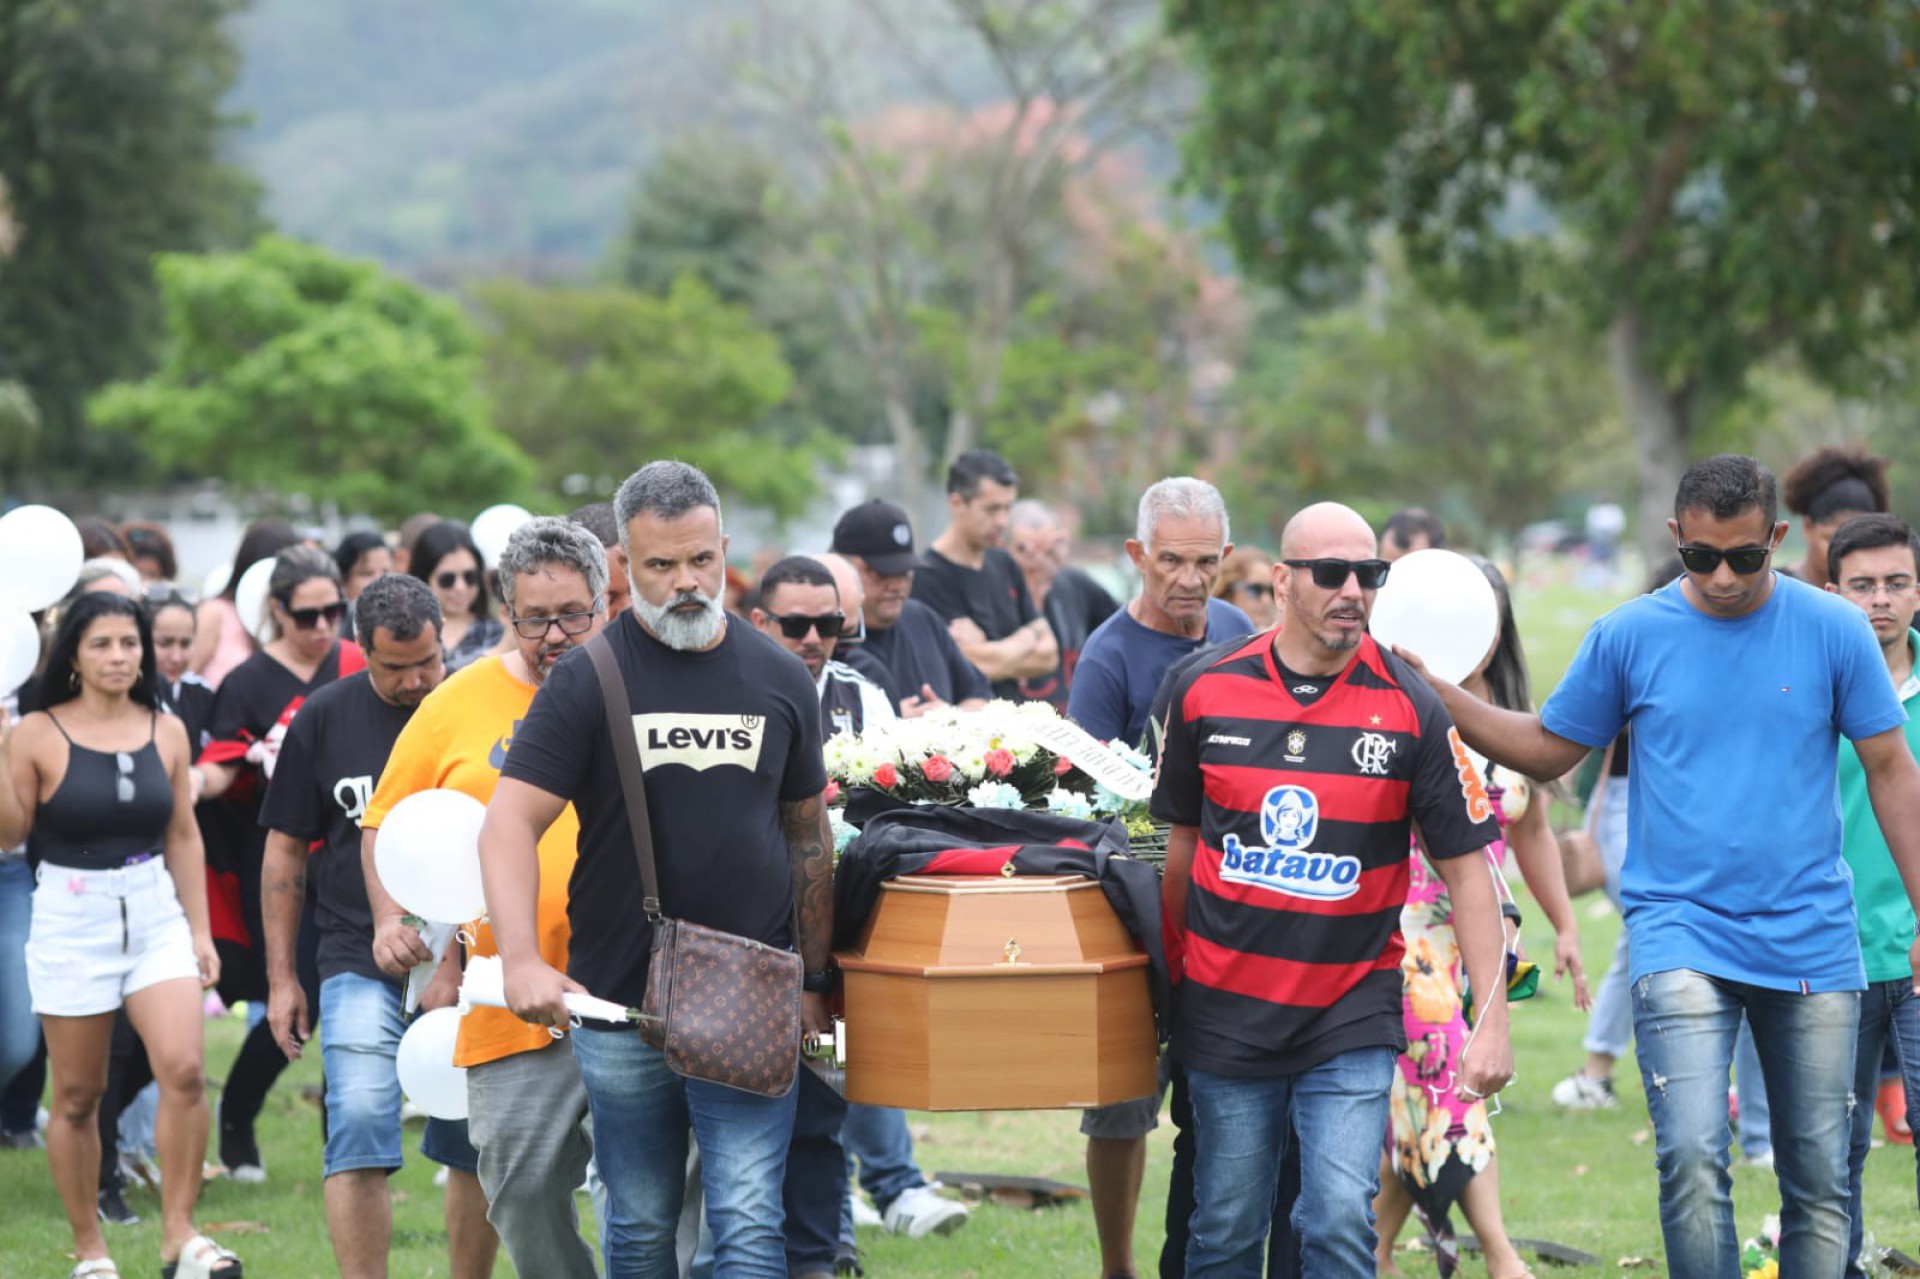 Enterro de Ronald Sant'anna, de 54 anos, morto por uma retroescavadeira após discussão de trânsito na Baixada Fluminense - Pedro Ivo/Agência O Dia